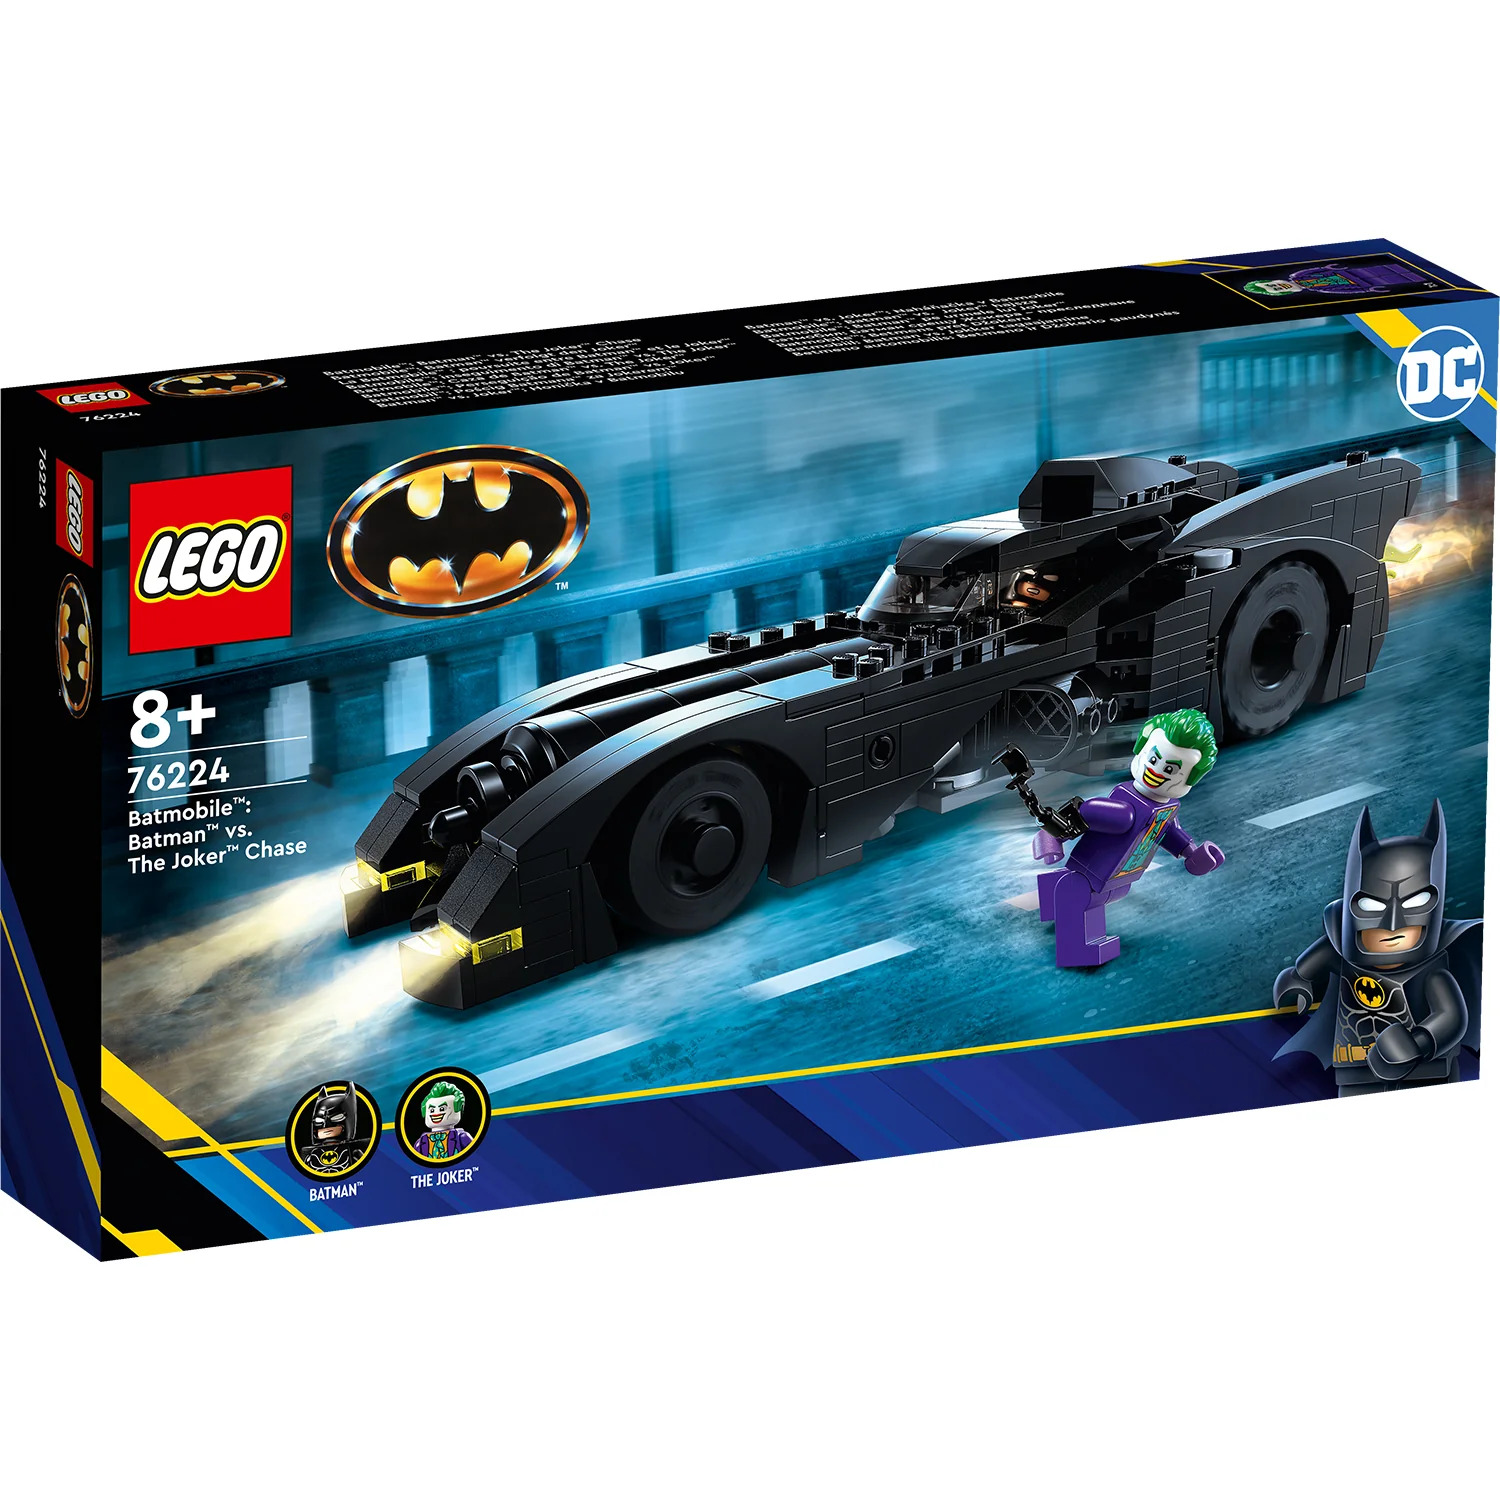 LEGO DC Batmobile Batman vs. The Joker Chase (76224) Revealed The